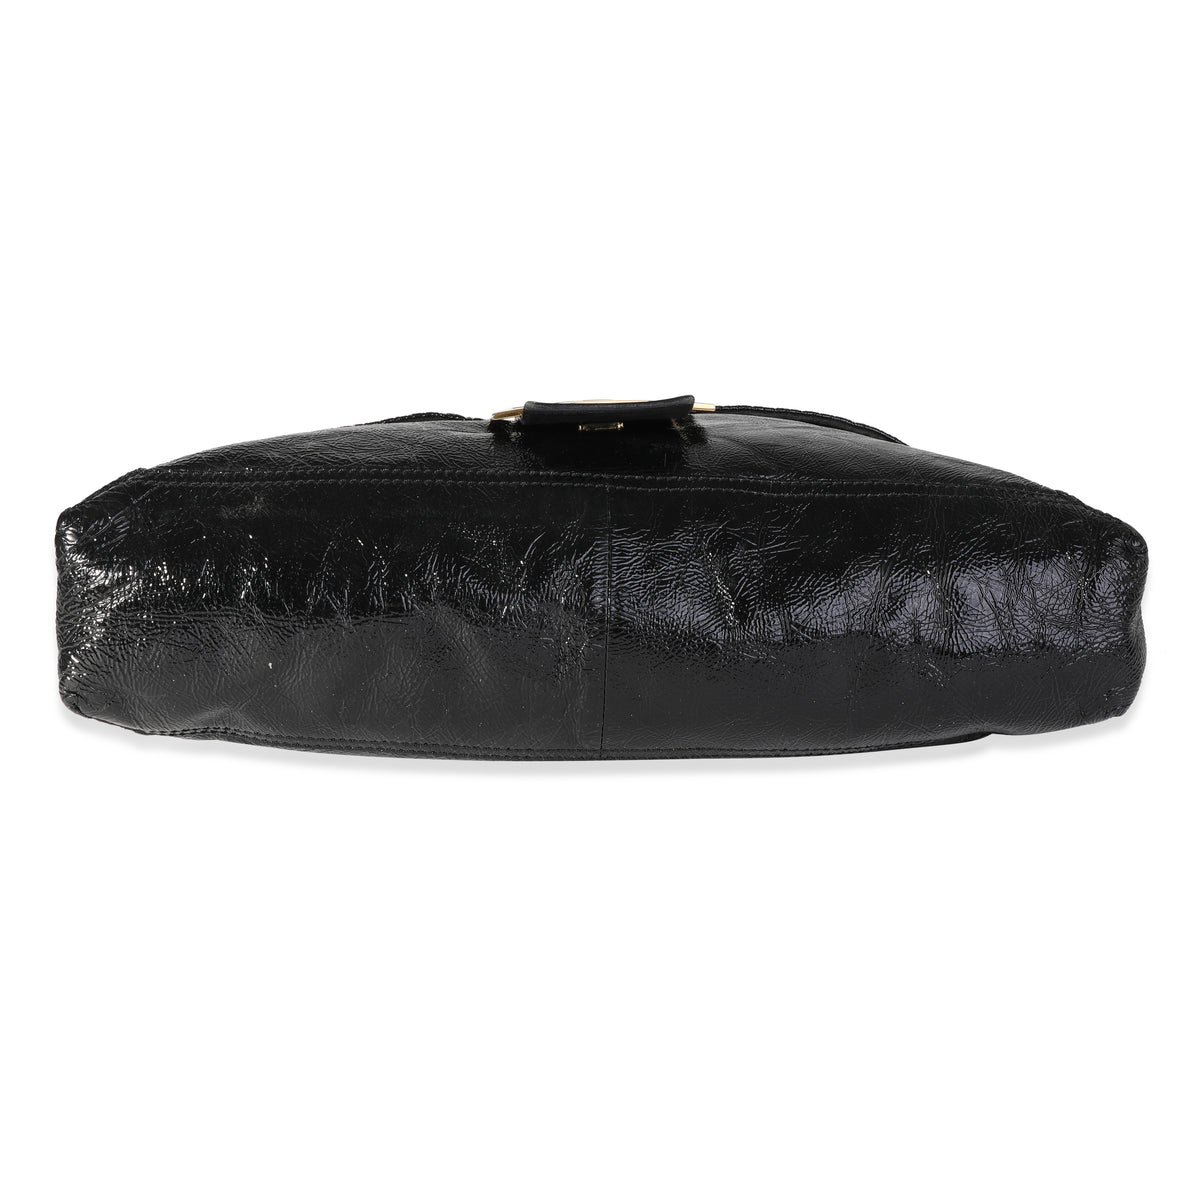 Fendi Black Patent Leather Convertible Baguette